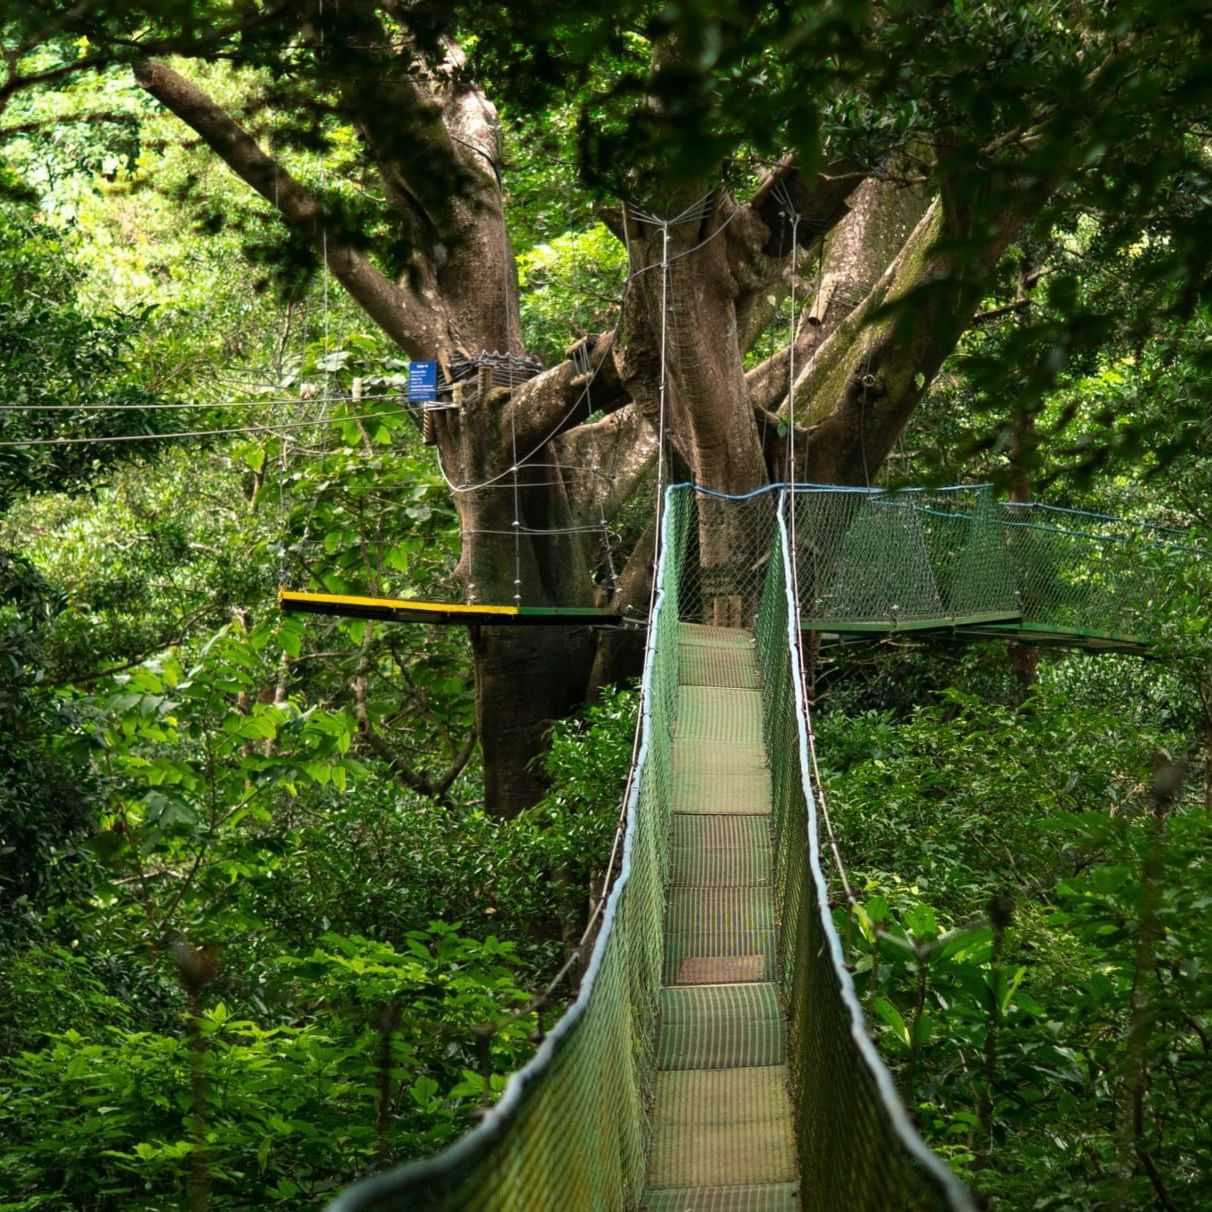 Hanging Bridge in the forest near Buena Vista Del Rincon